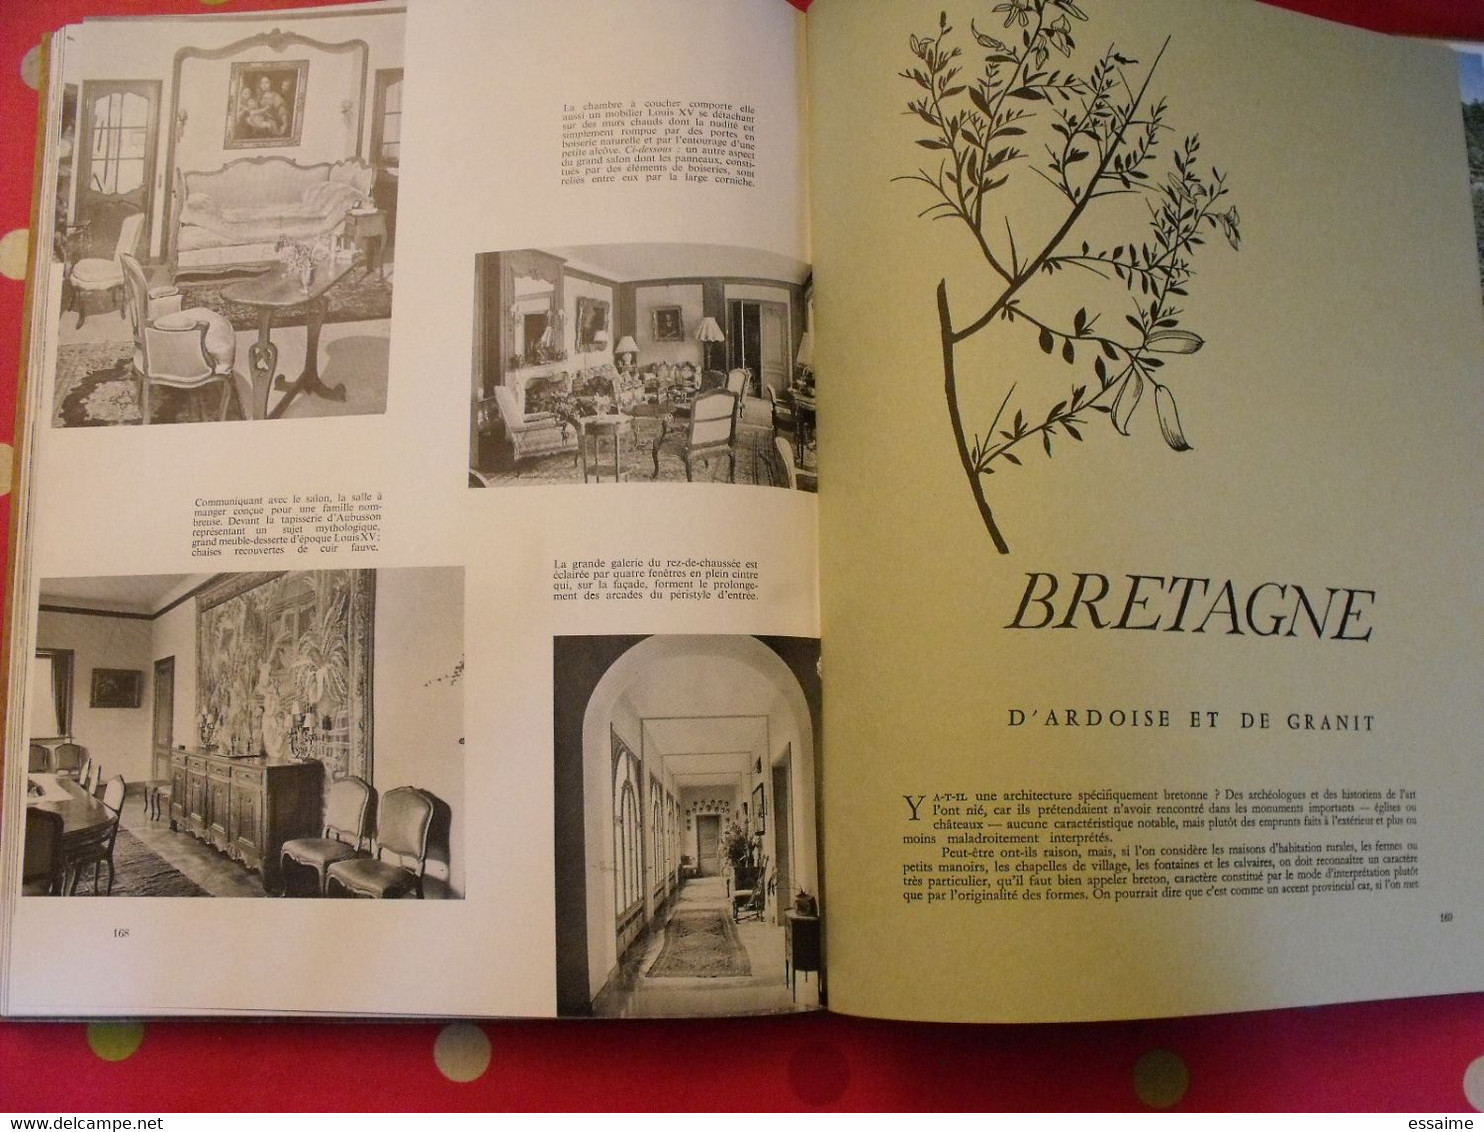 maisons de France "styles régionaux". plaisir de france vers 1950-60. très illustré. beau livre avec emboitage